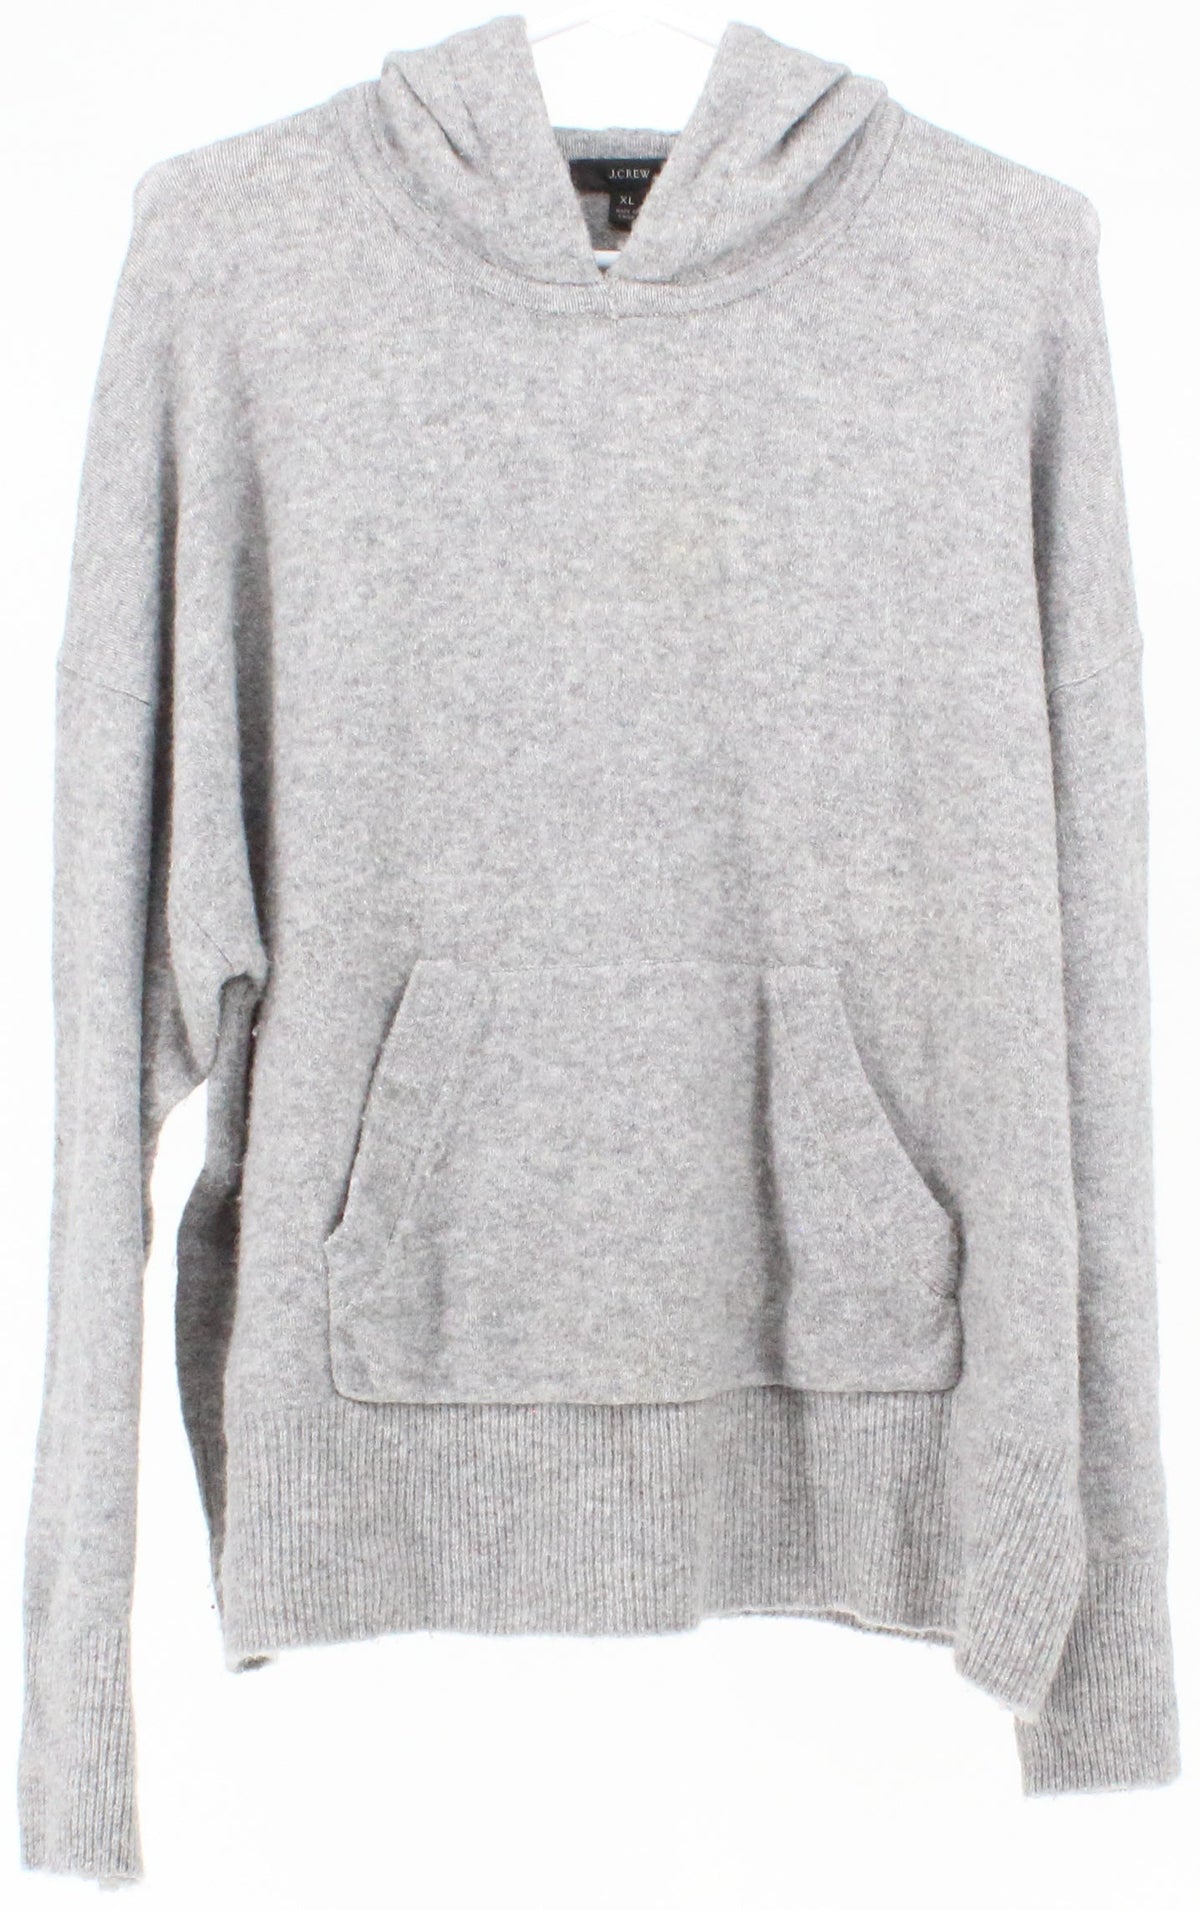 J Crew Light Grey Hooded Women's Wool Sweater